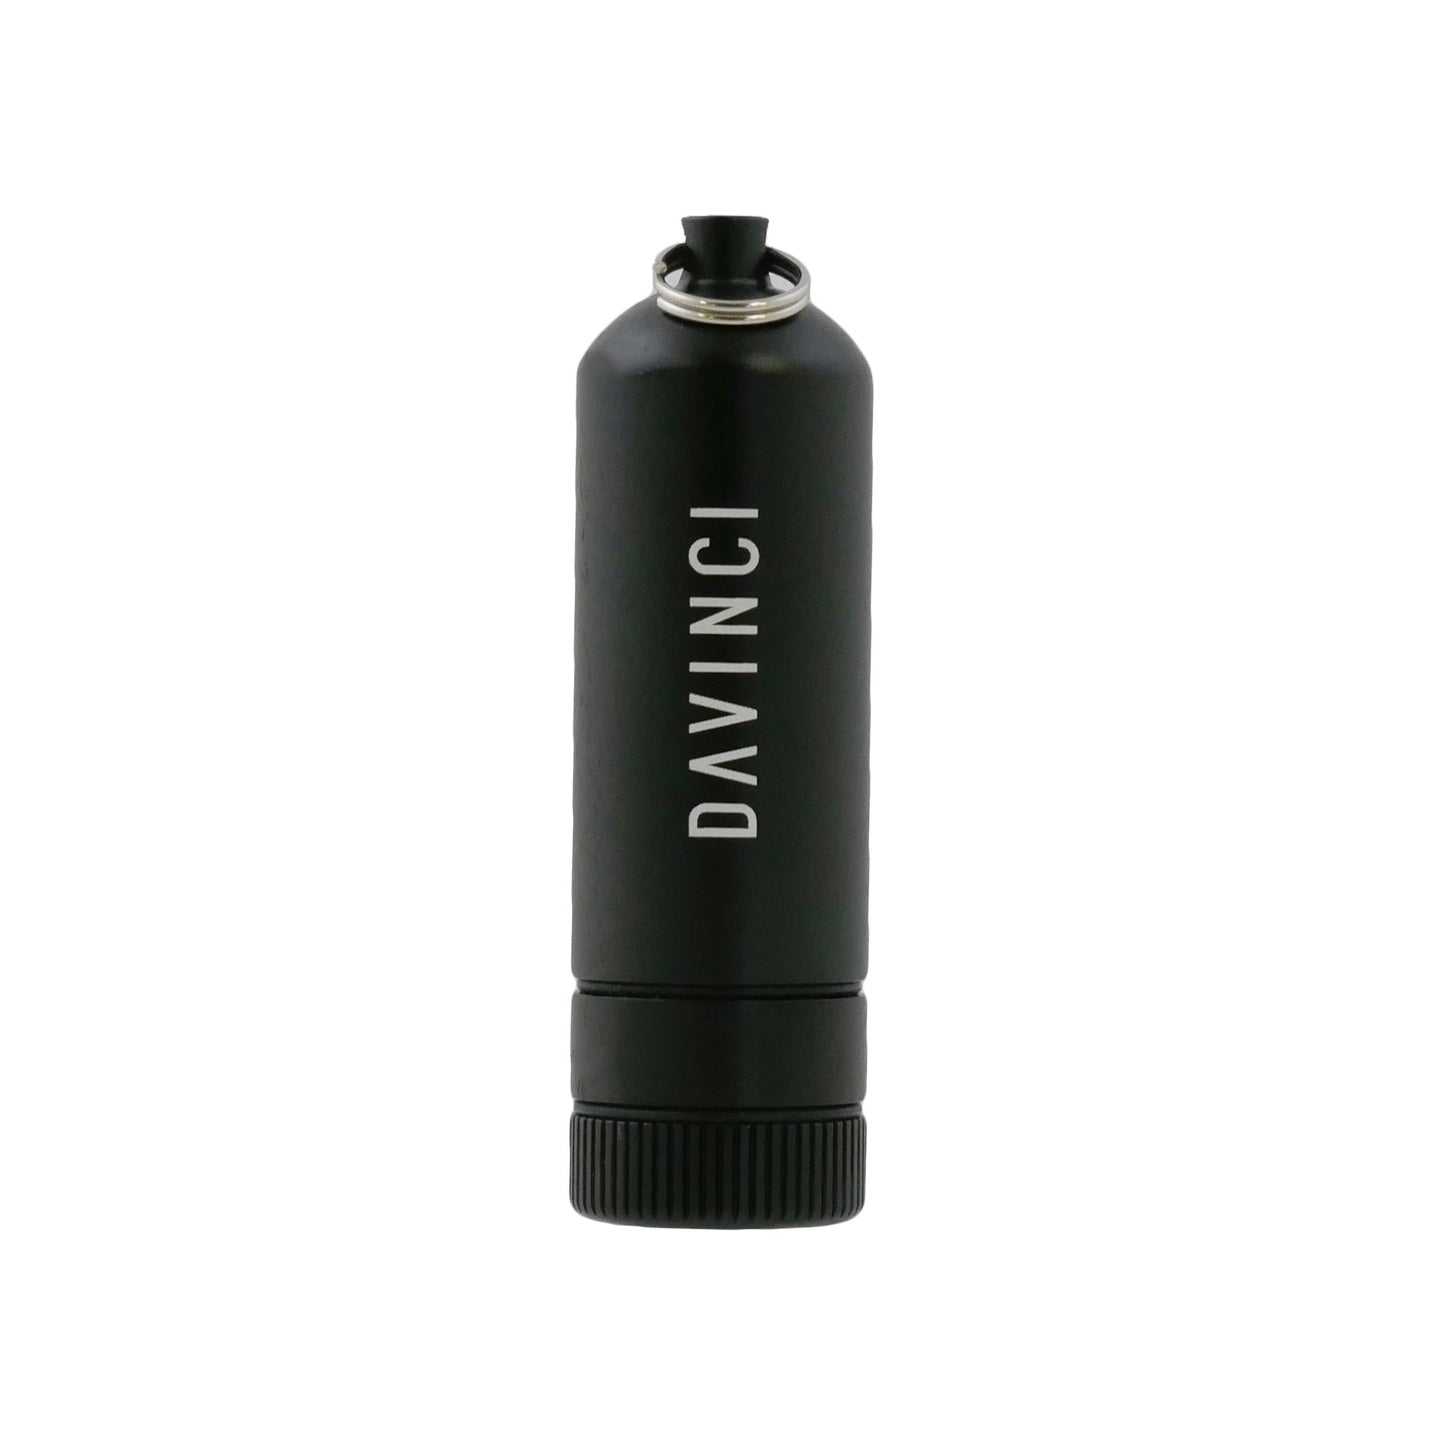 MIQRO Carrying Can XL Vaporizers da vinci Onyx (Black) 